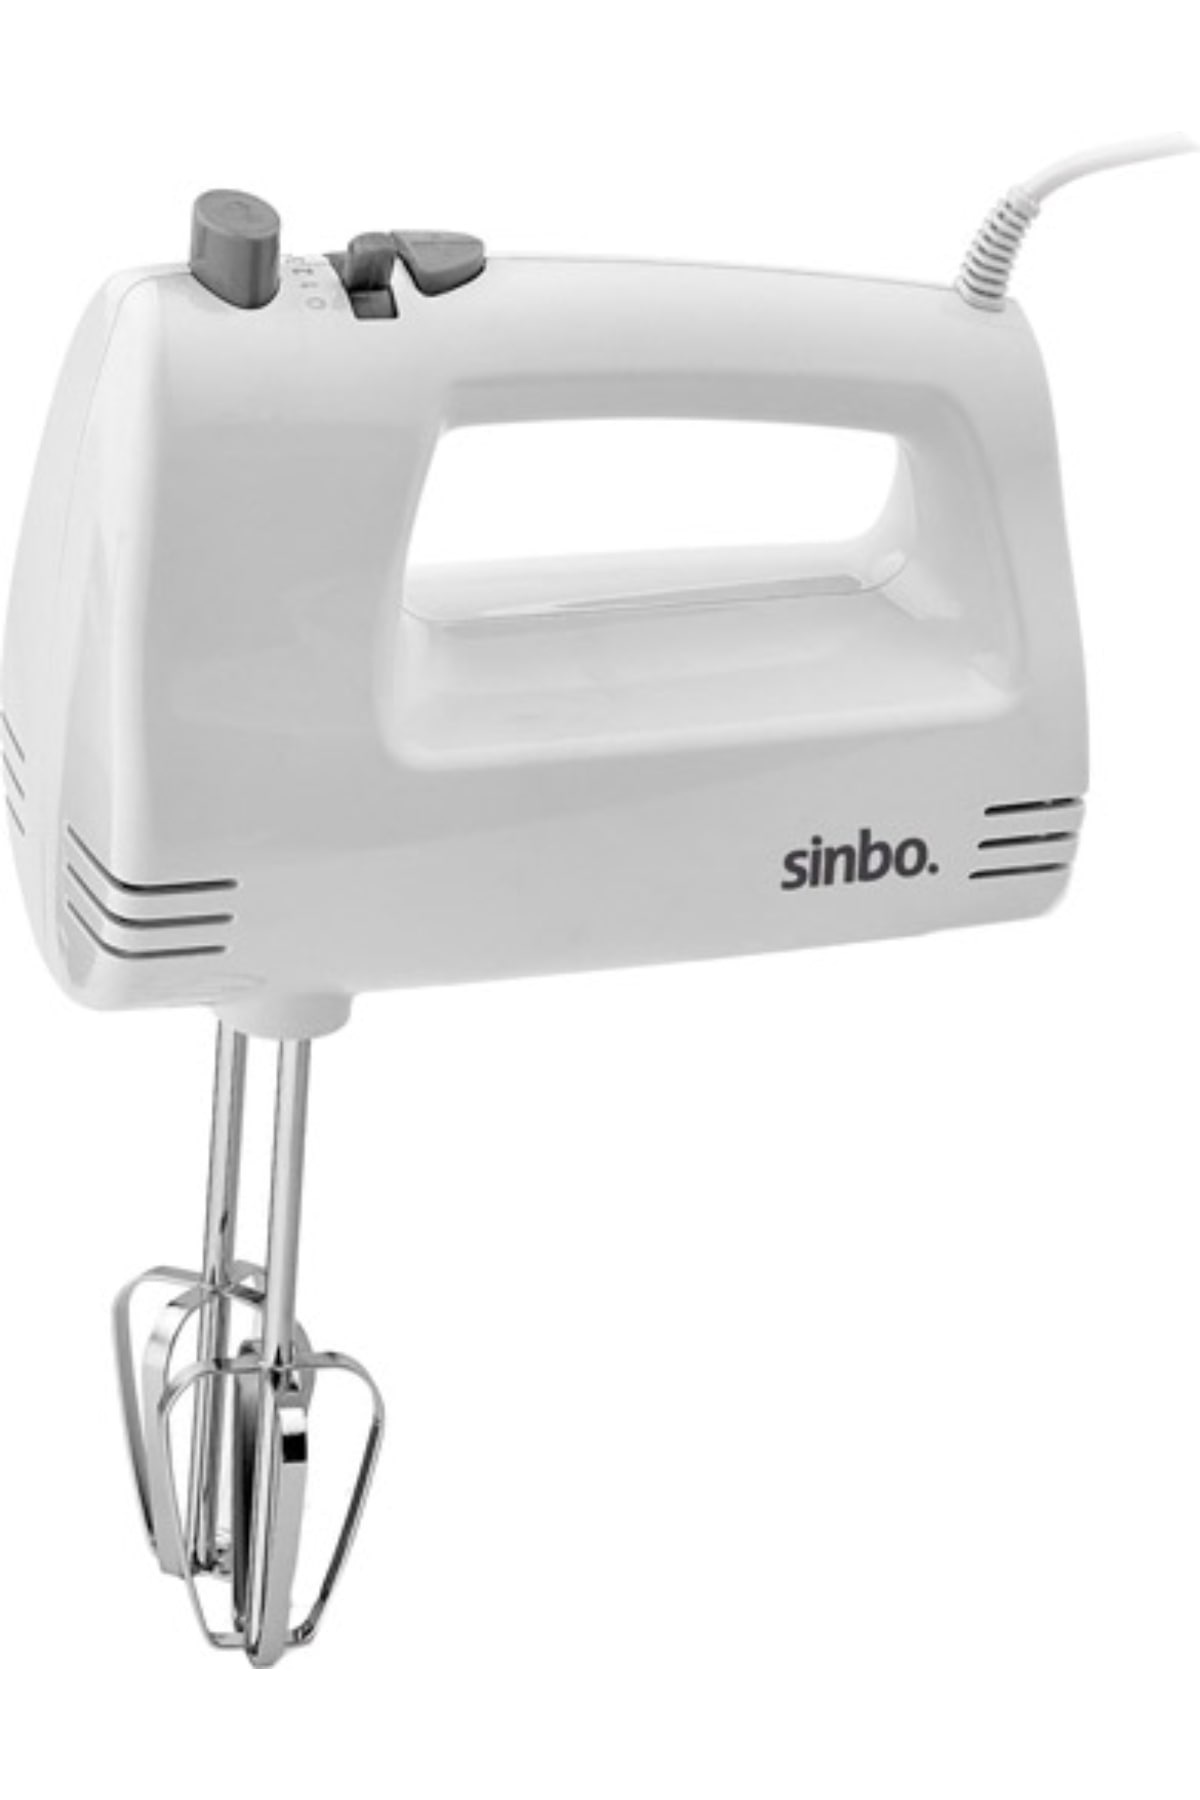 Sinbo Smx-2758 El Mikseri 5 Kademeli*12 - 11-0270 - 2345